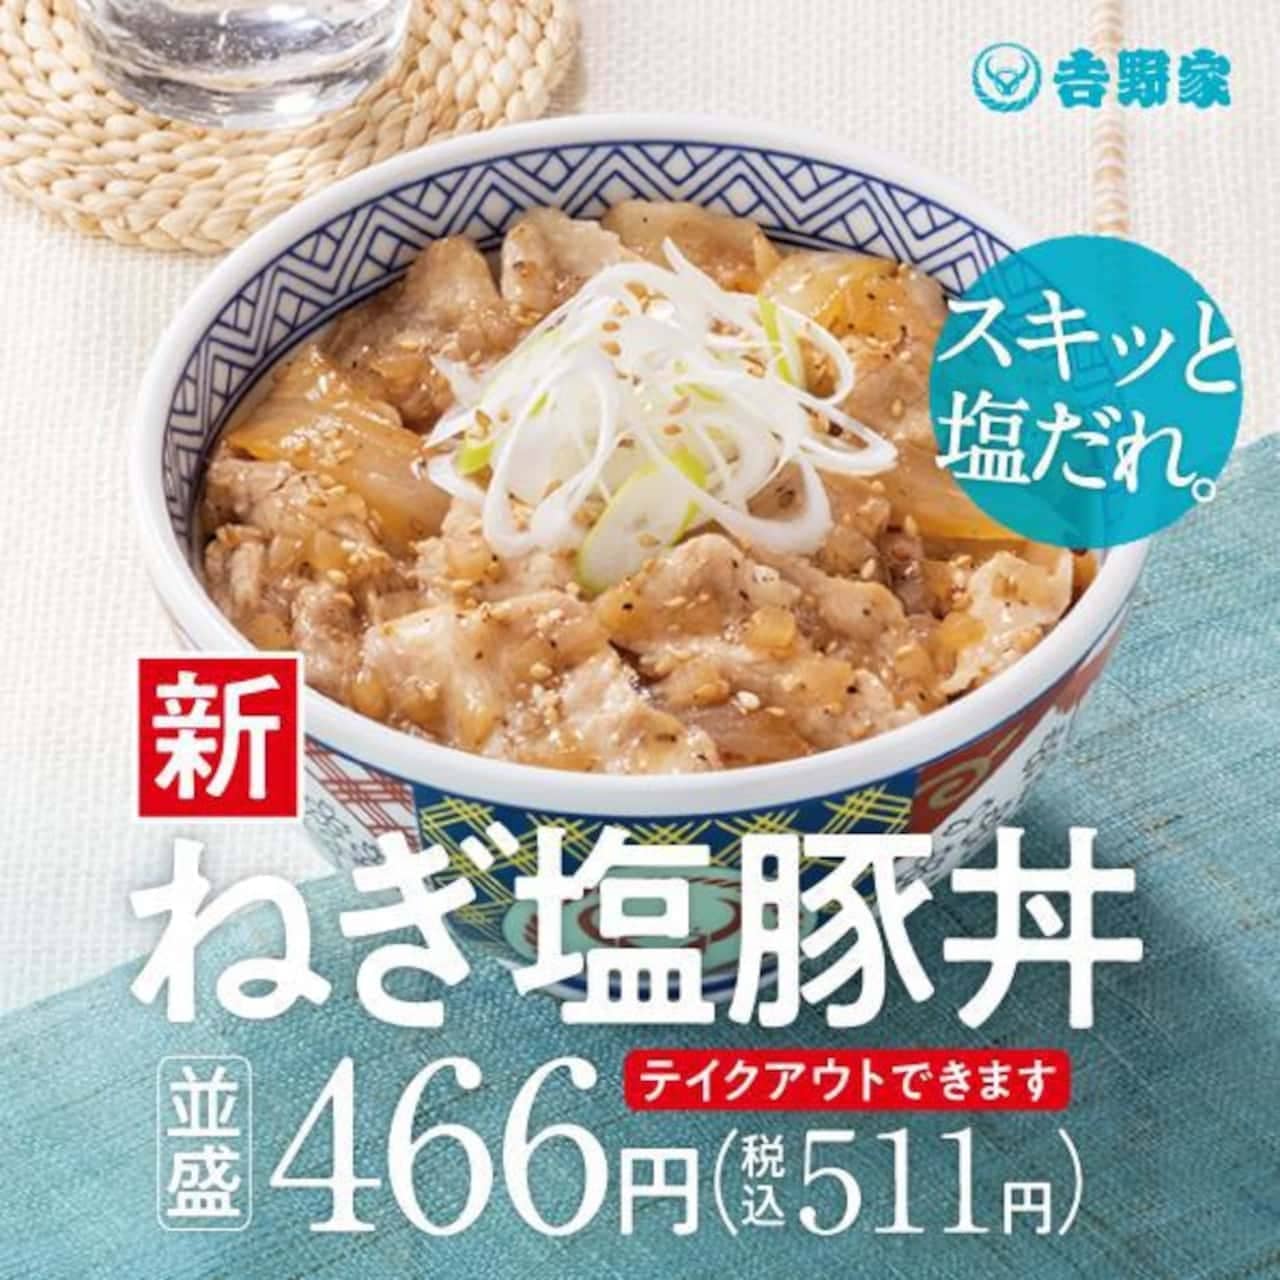 Yoshinoya "Negi-Shio Pork Bowl", "Negi-Shio Pork Set Meal", "Negi-Shio Chicken Bowl", "Negi-Shio Chicken Set Meal", "Negi-Shio Karaage Bowl", "Negi-Shio Karaage Set Meal" also